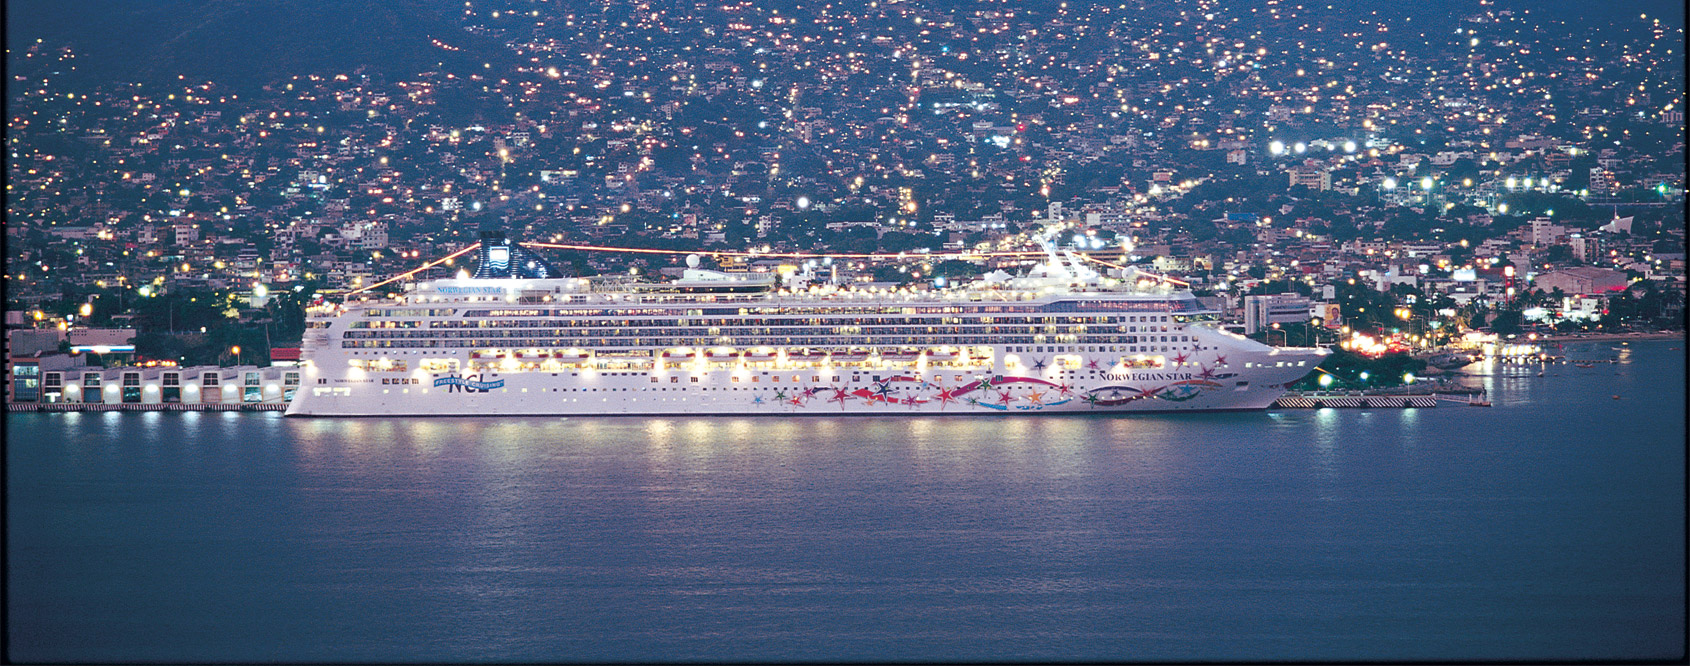 Norwegian Cruise Line Main Image